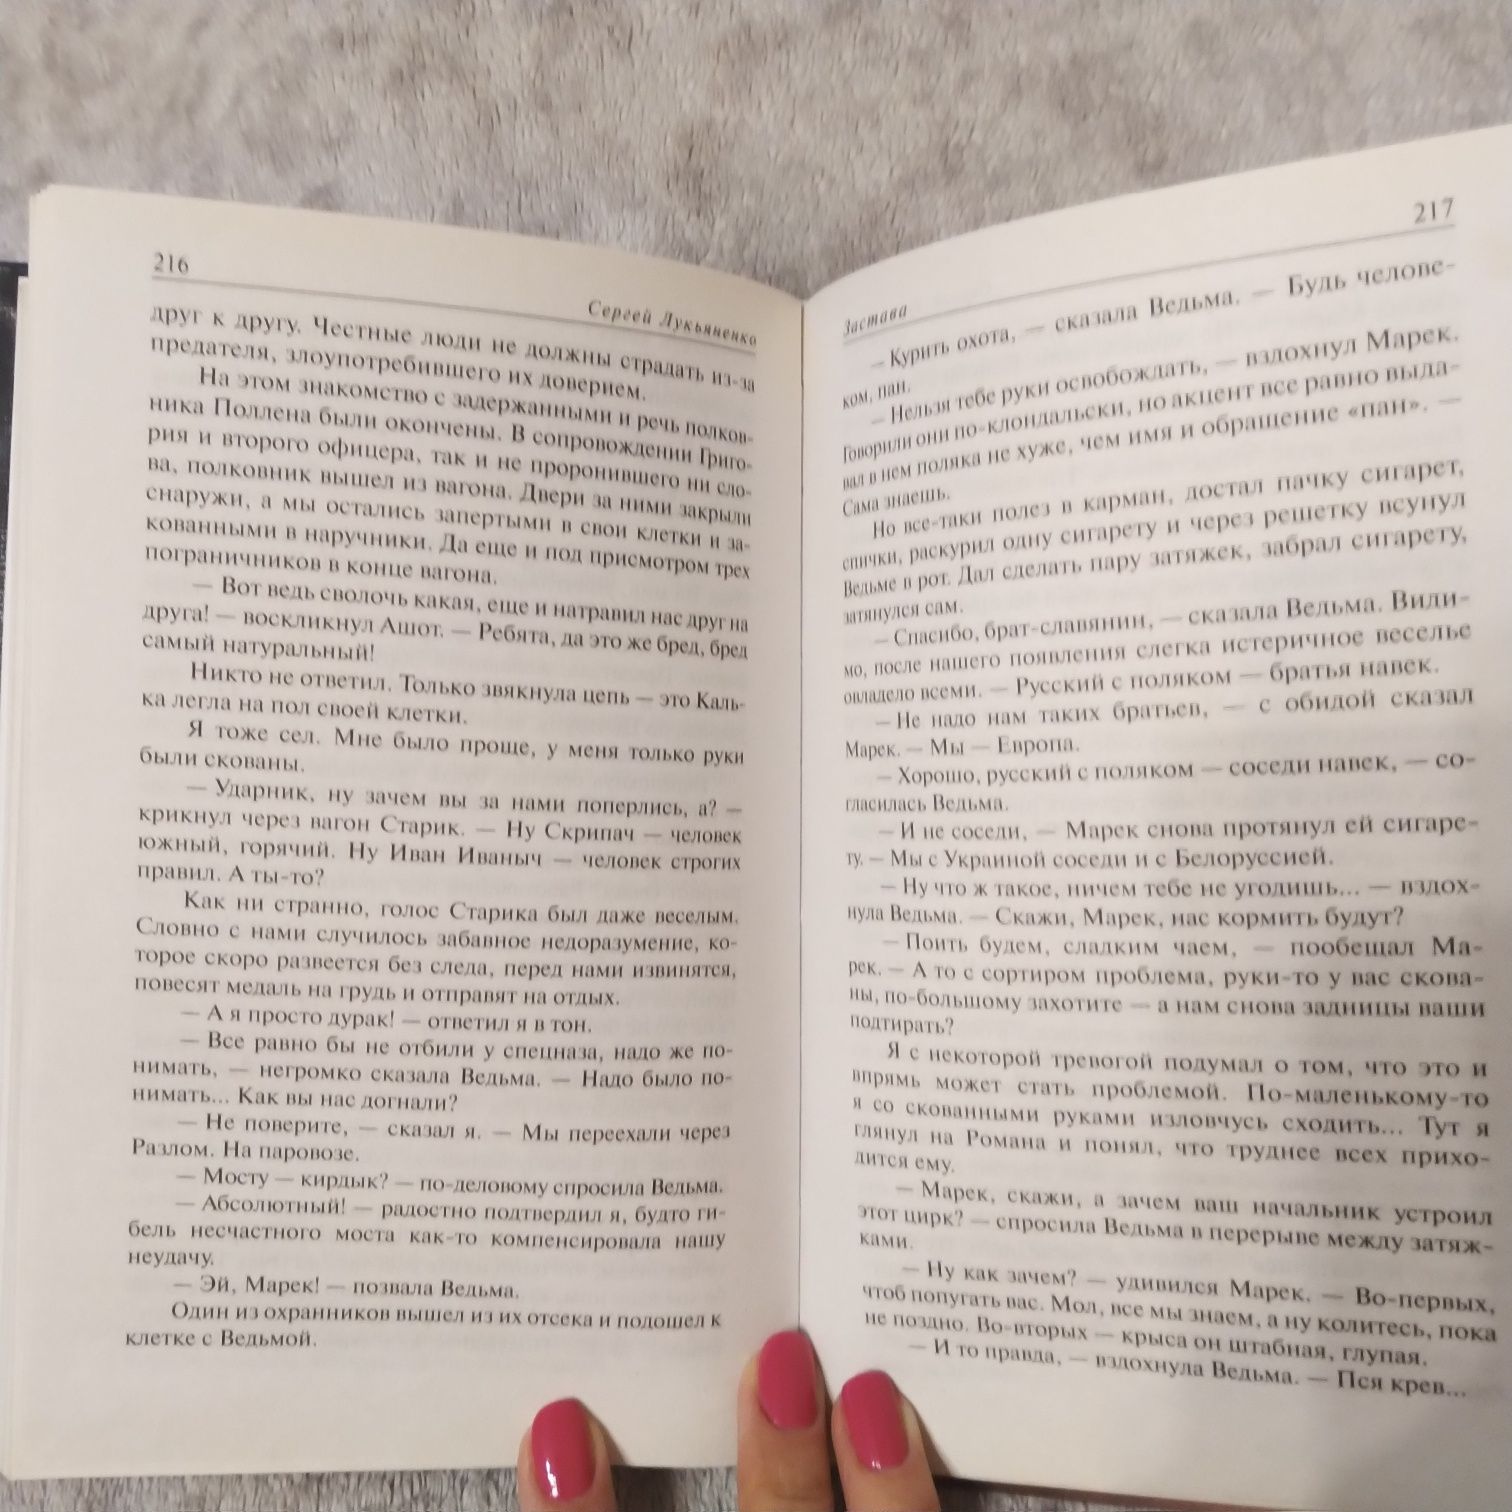 Книга С.В. Лукьяненко "Застава", из серии  "Пограничье"